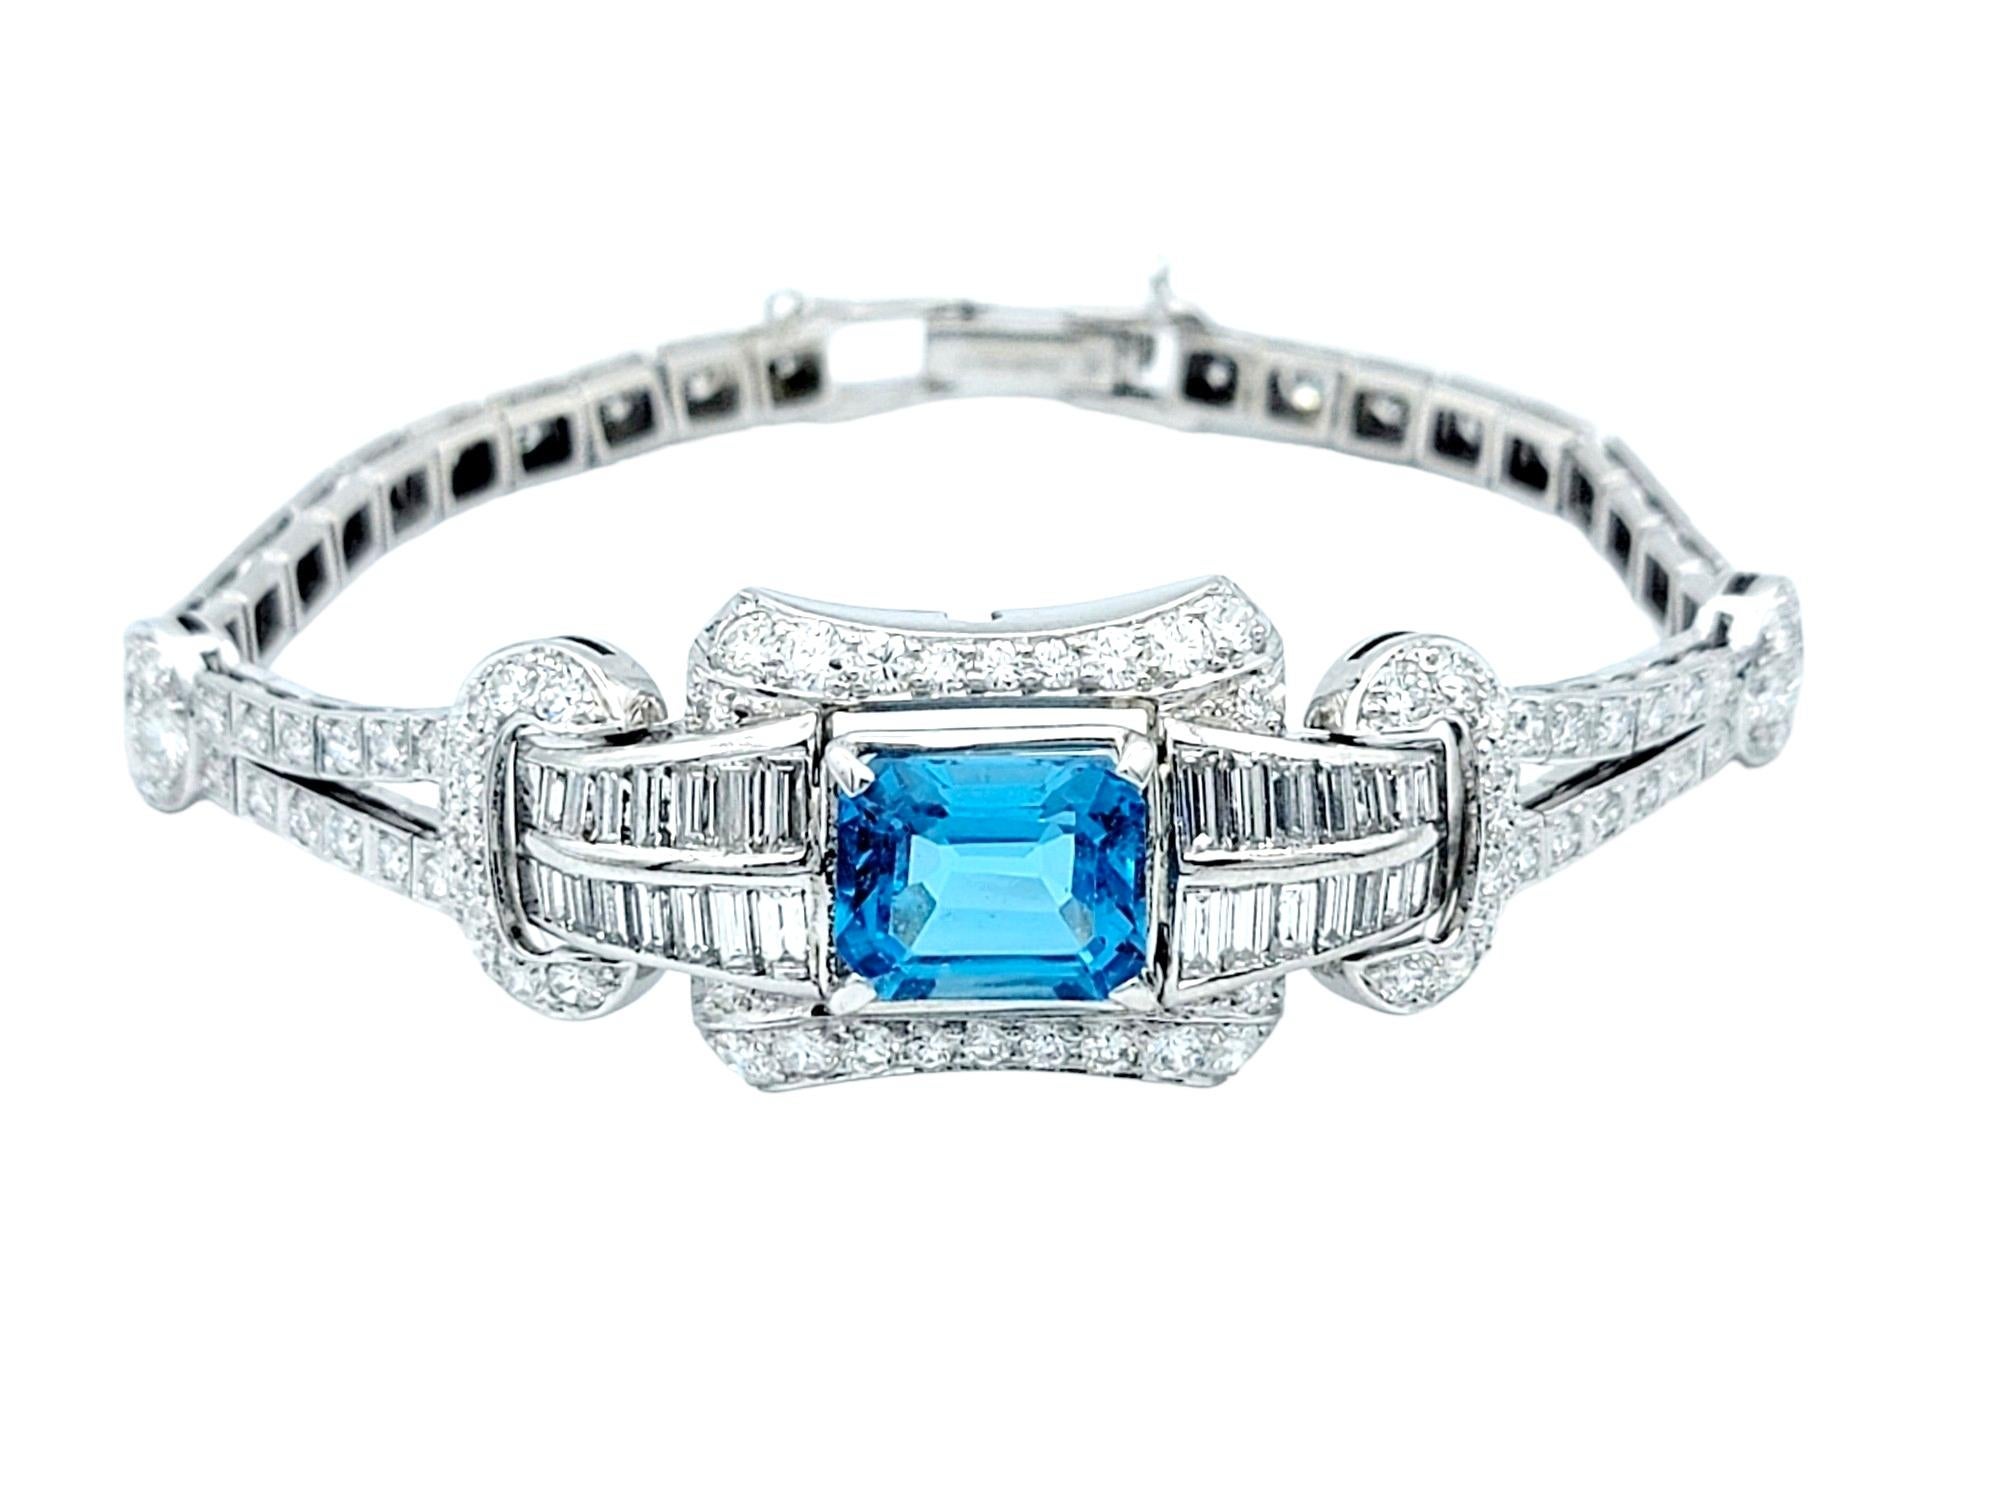 Chef-d'œuvre intemporel de l'époque Art of Vintage, ce bracelet vintage exquis respire l'élégance et la sophistication. Fabriquée en platine poli brillant, la pierre bleue enchanteresse associée aux diamants éblouissants en fait une pièce dont vous